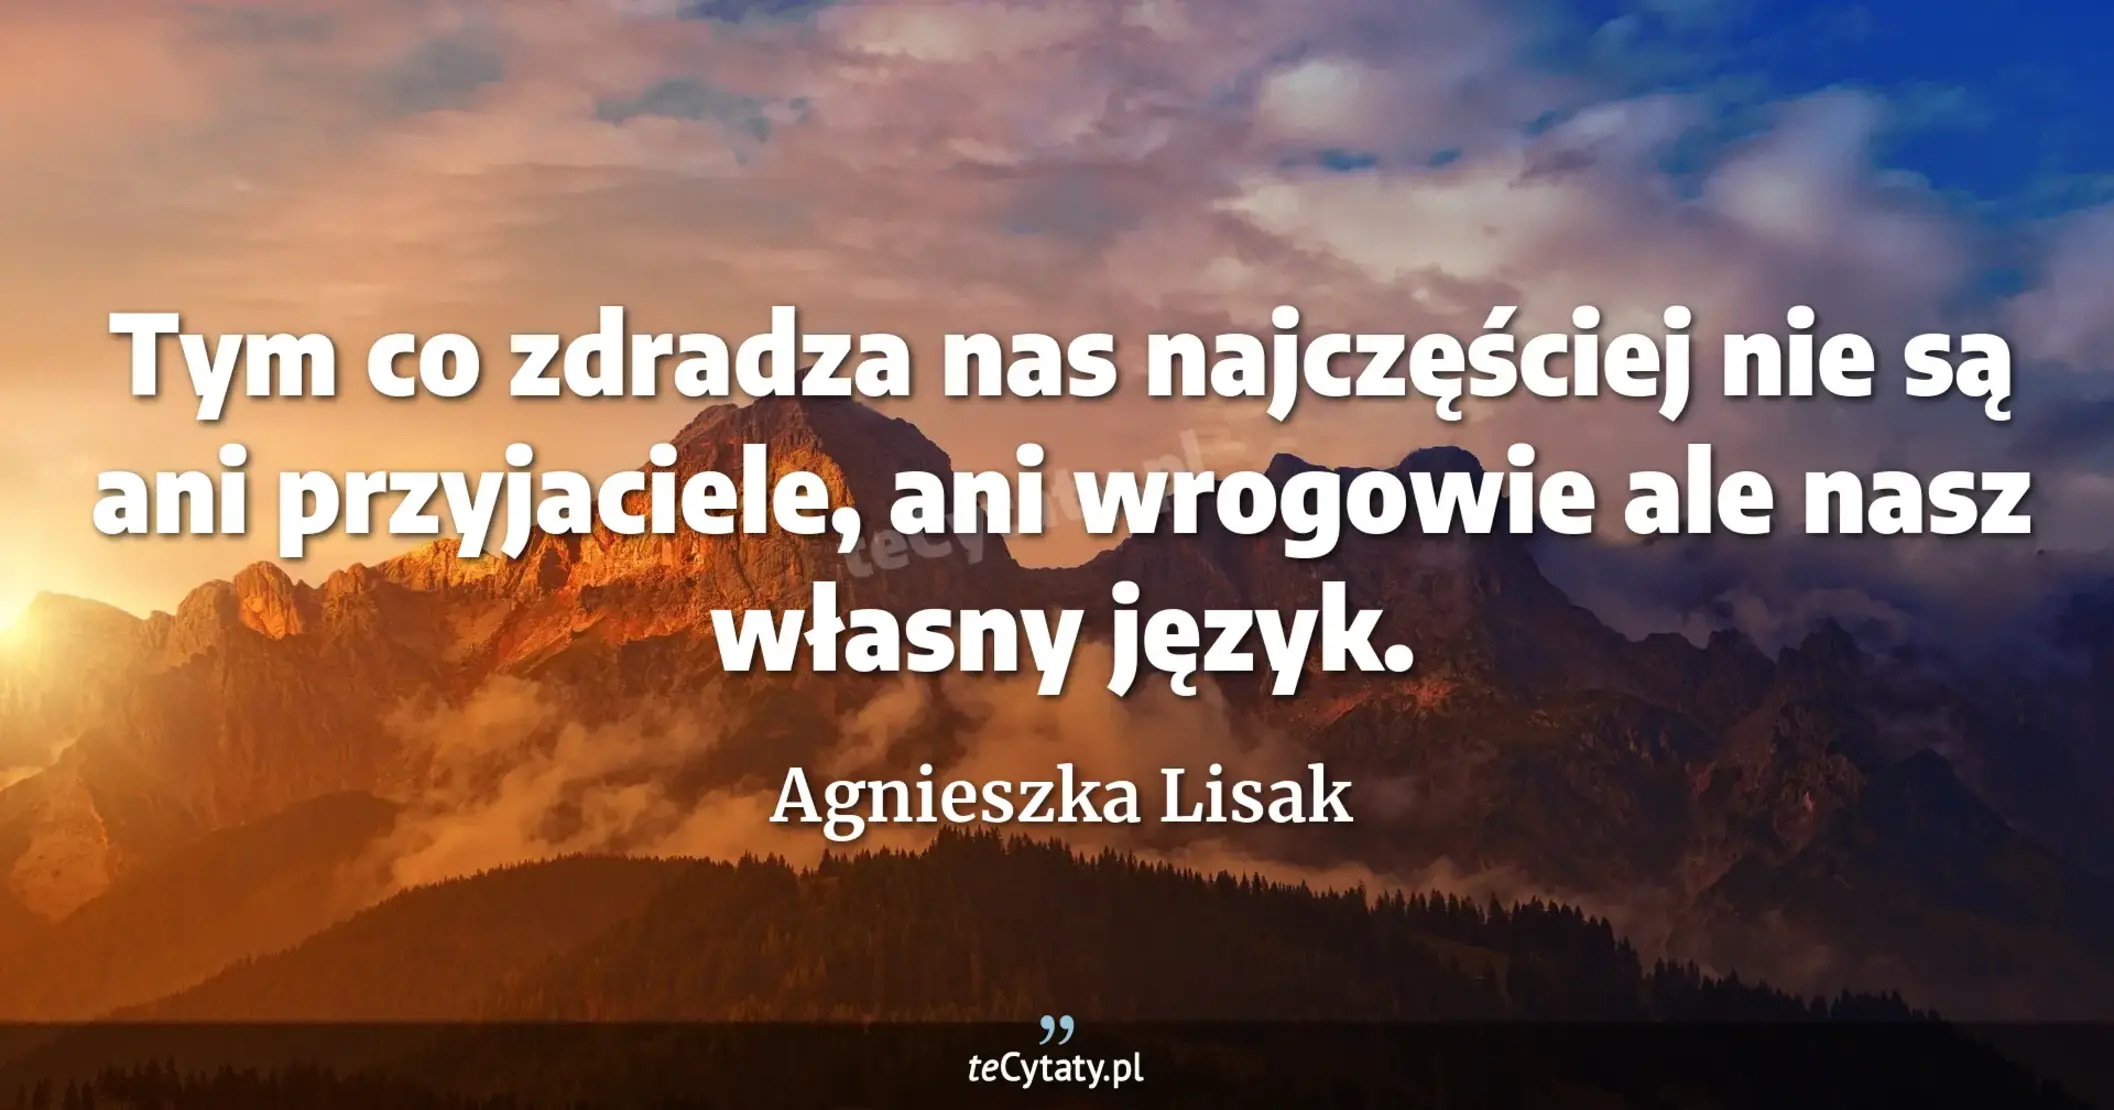 Tym co zdradza nas najczęściej nie są ani przyjaciele, ani wrogowie ale nasz własny język. - Agnieszka Lisak